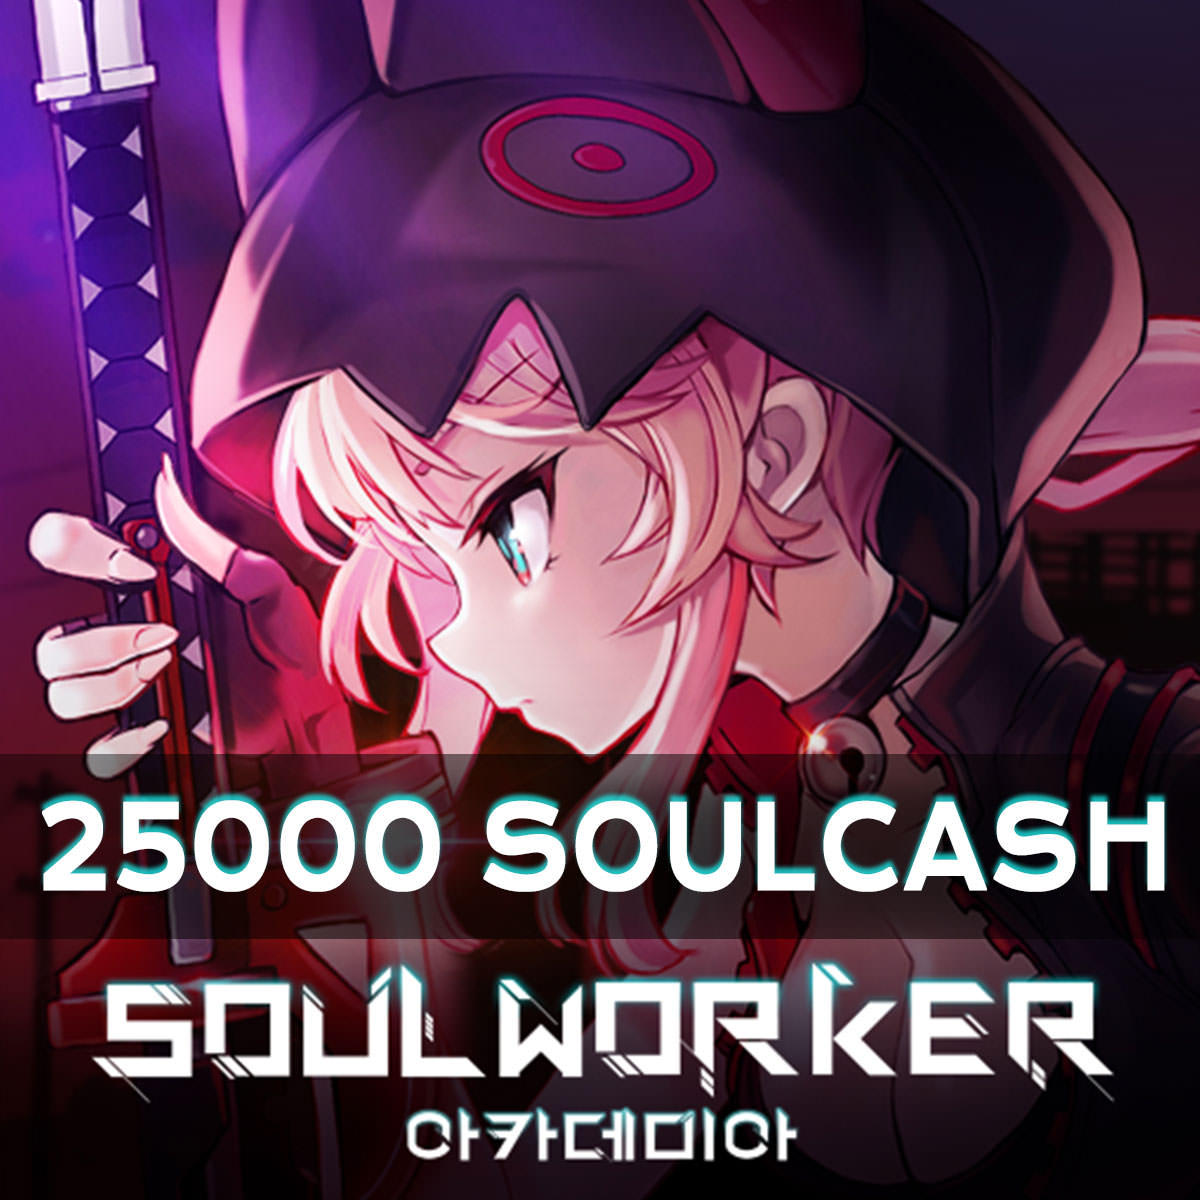 Soulworker 25000 SoulCash